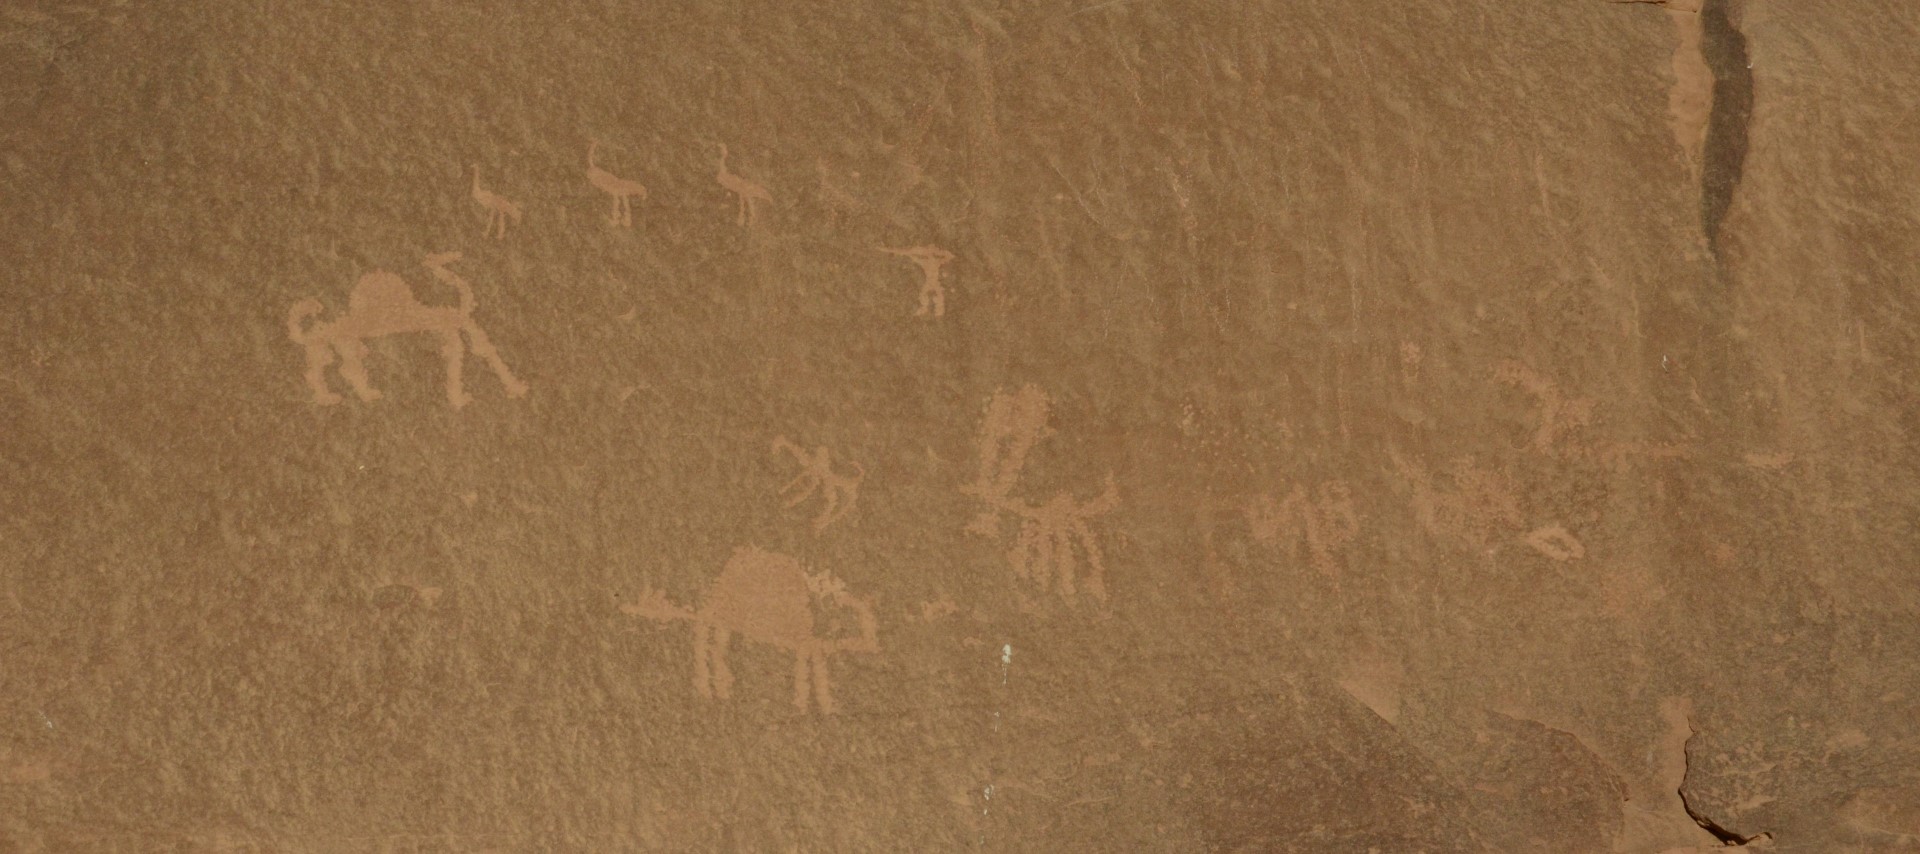 Prehistorische rotstekeningen in Wadi Rum, Jordanië